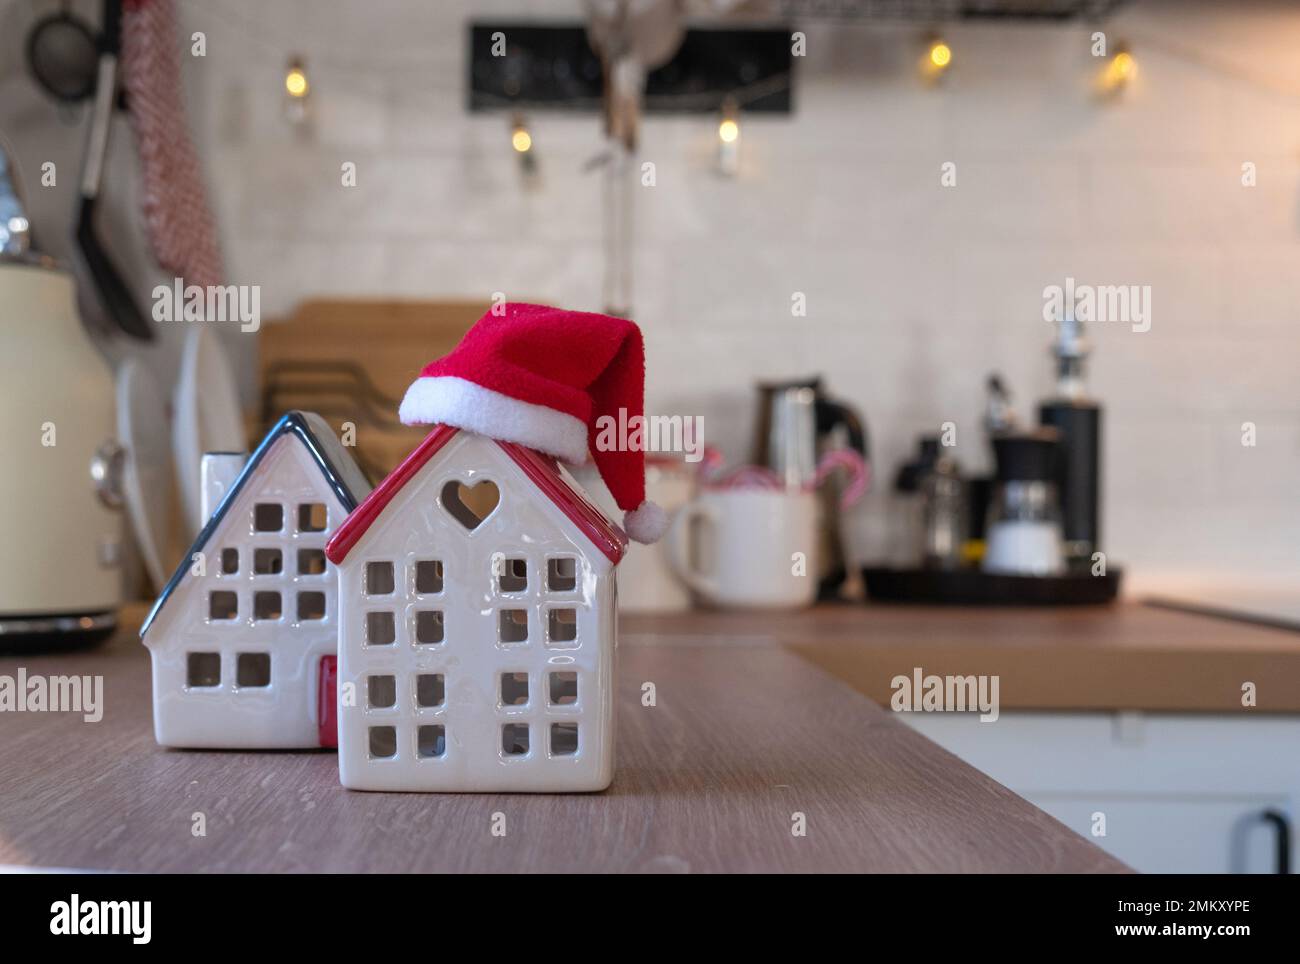 Decorazione della cucina di Natale - preparazione per una vacanza in famiglia, luce fata, albero di Natale, ornamento rosso, cervo divertente su armadi, stufa. Umore del celebrato Foto Stock